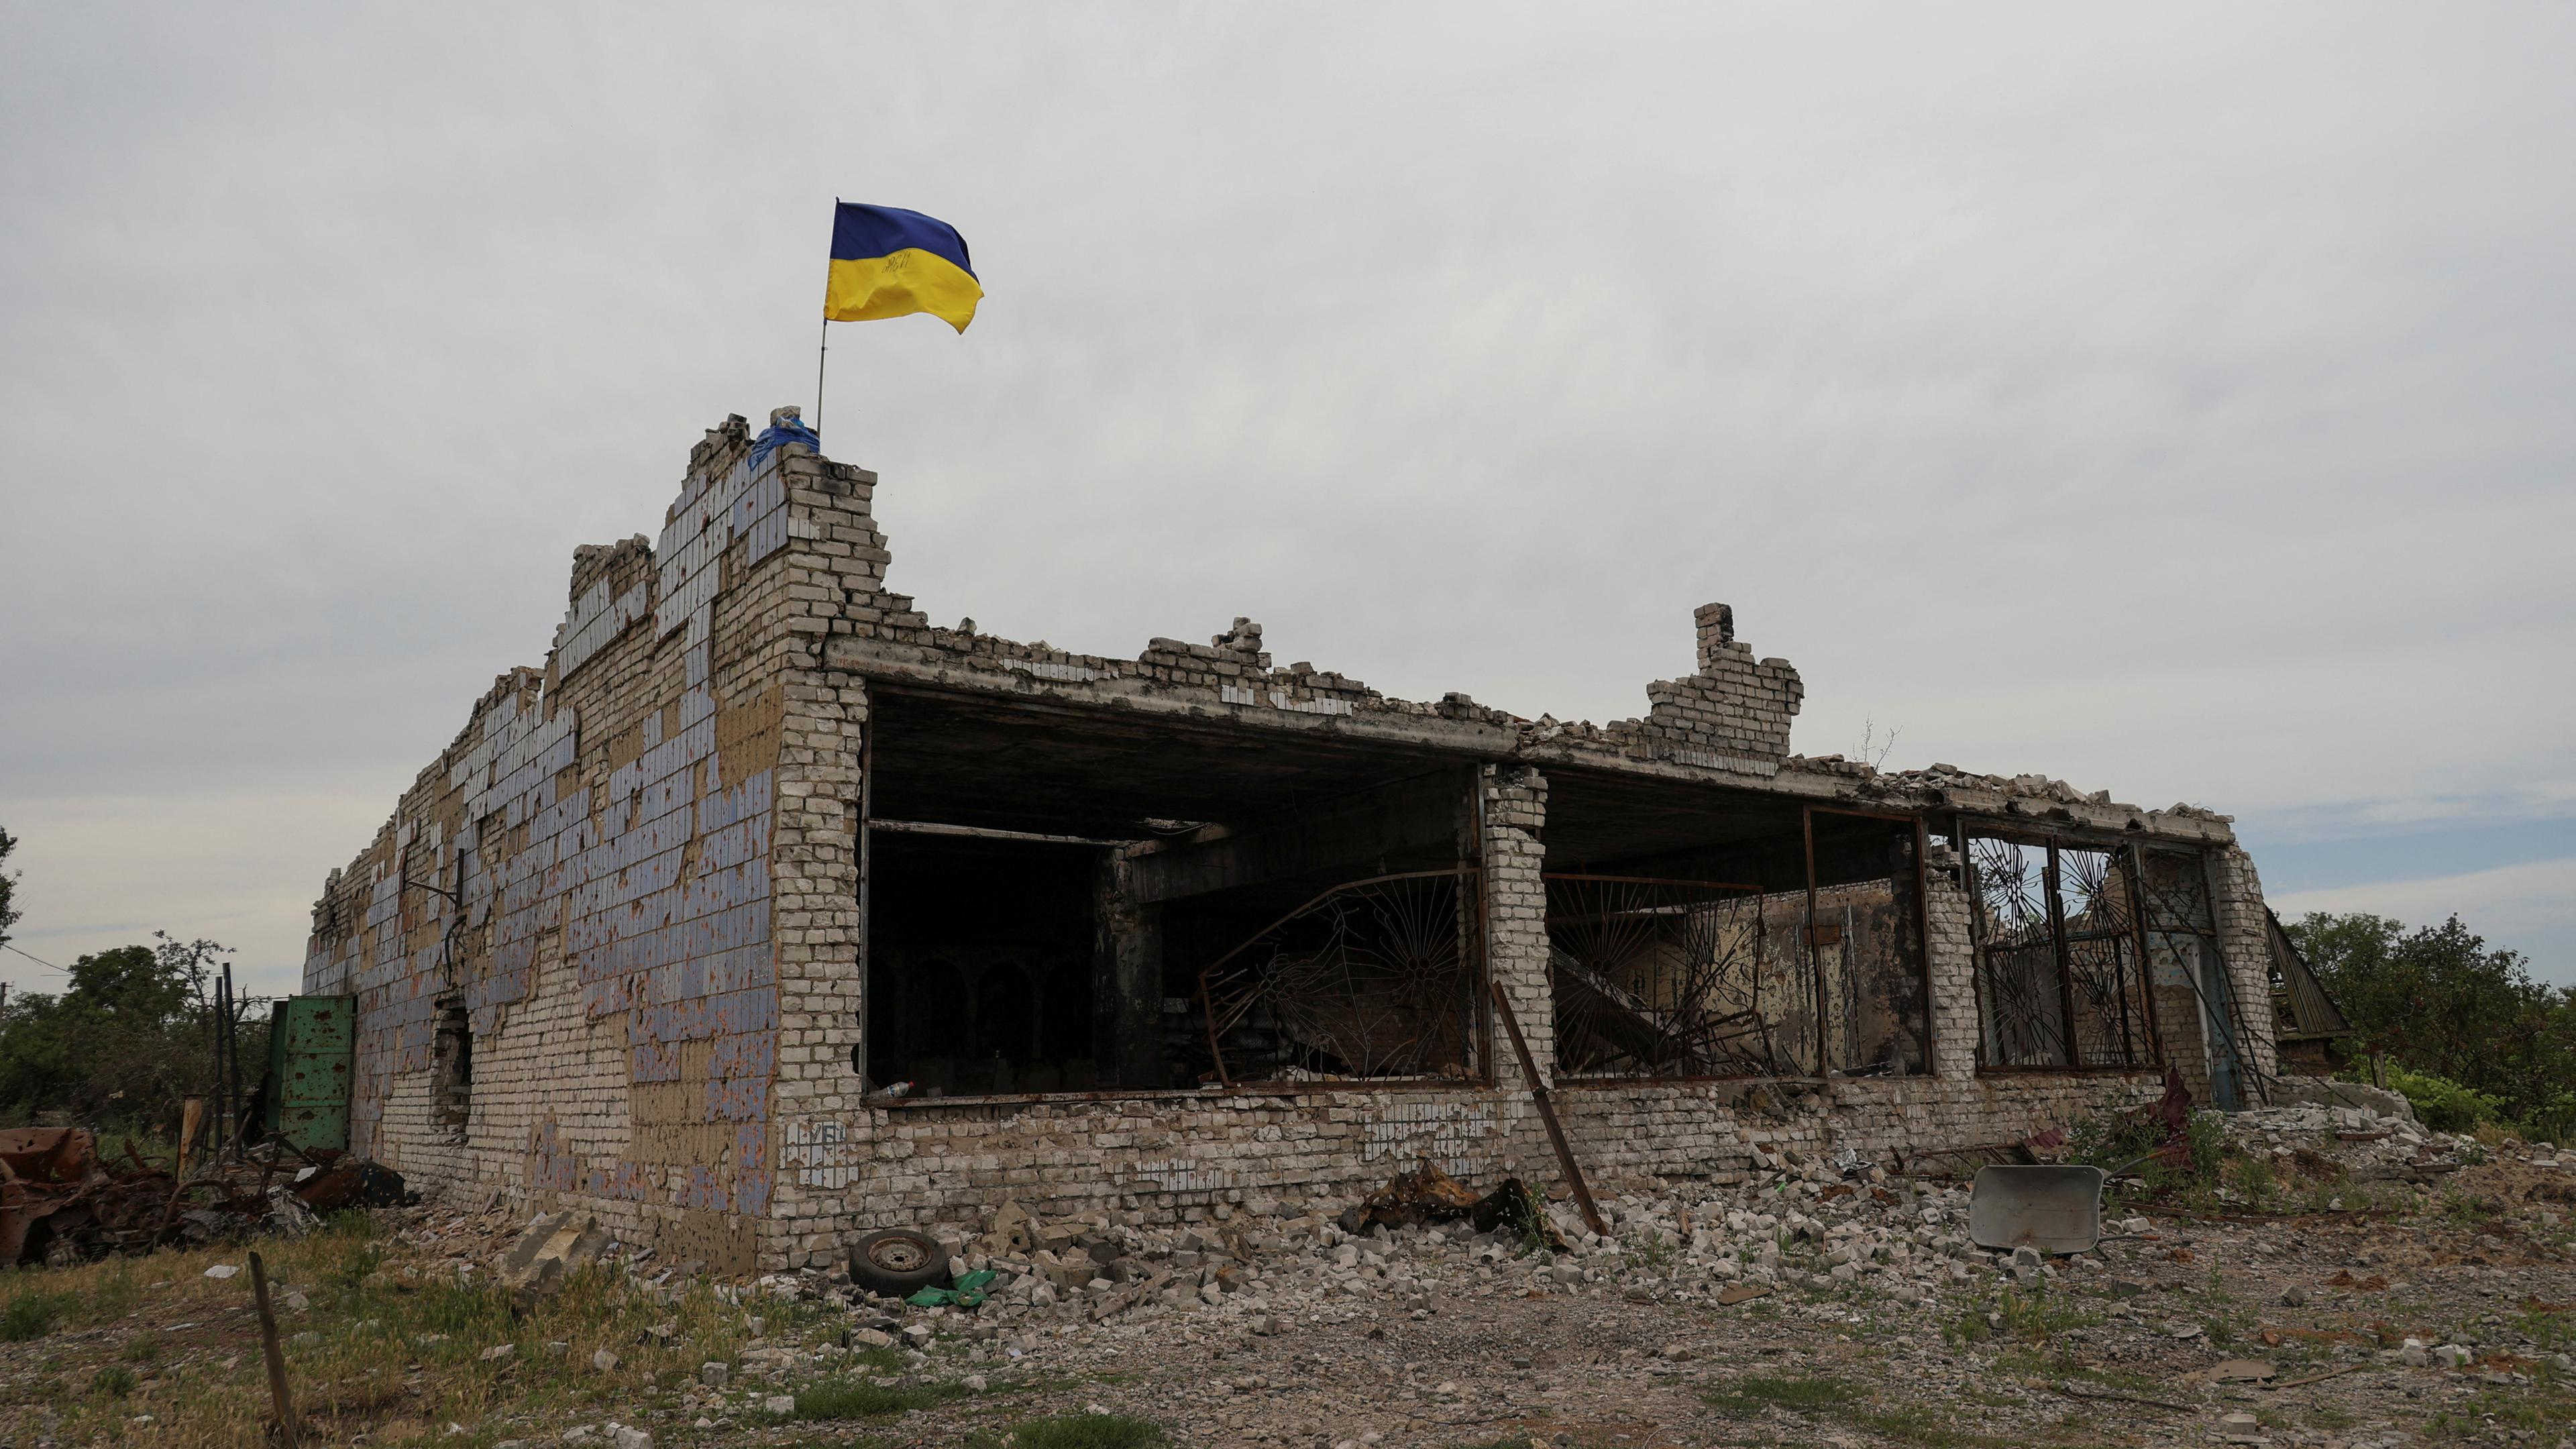 Zu sehen ist ein zerstörtes Gebäude mit einer Ukraine-Flagge.